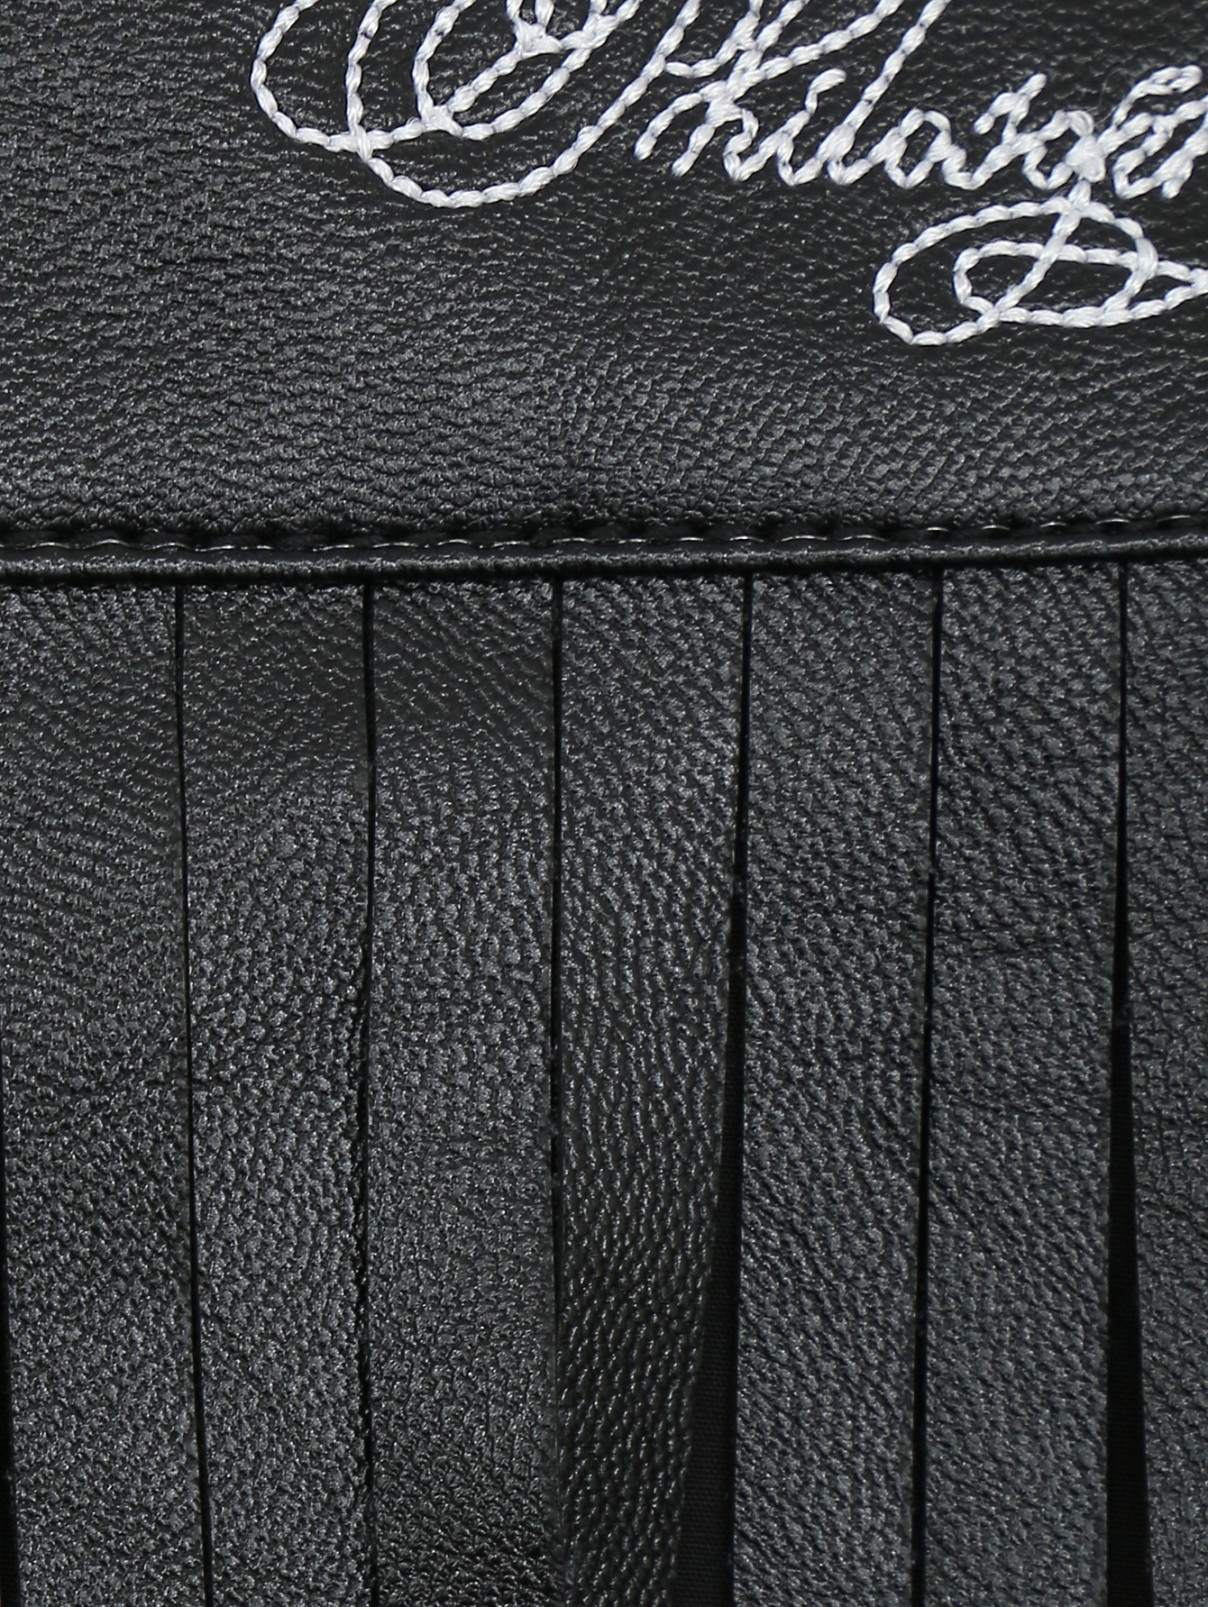 Юбка-шорты с бахромой Philosophy di Lorenzo Serafini  –  Деталь  – Цвет:  Черный